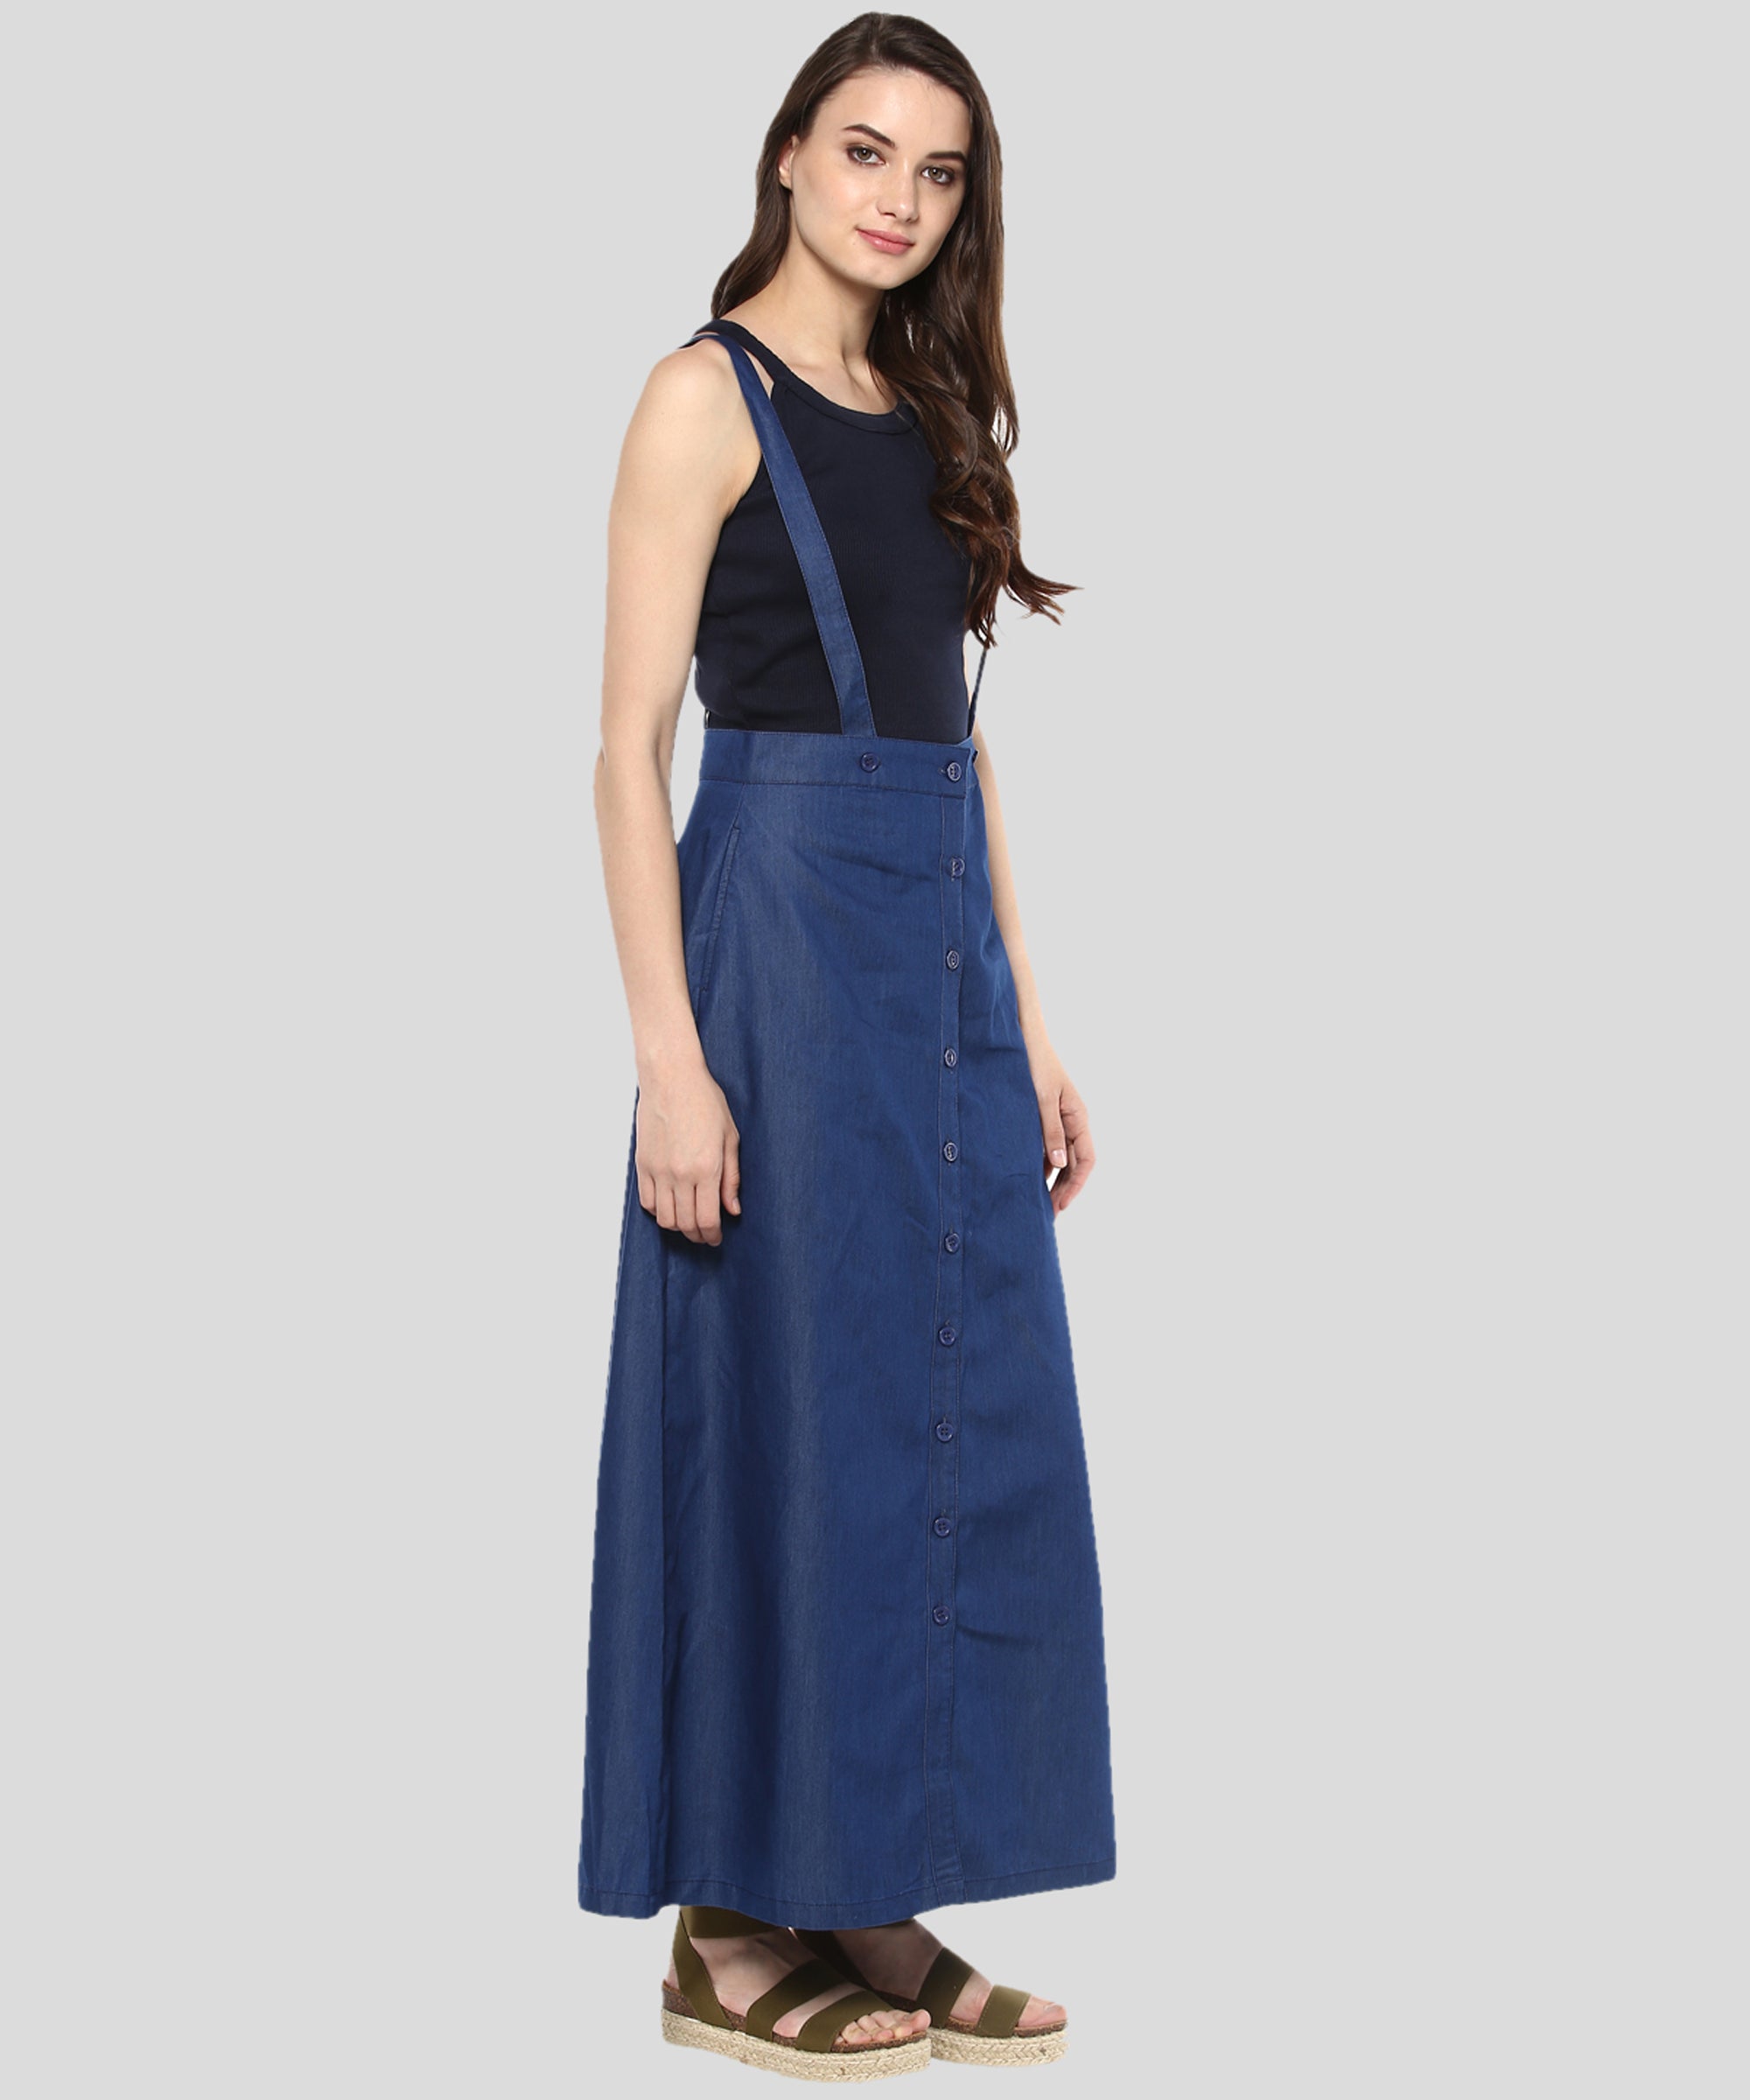 Women's Denim Pinafore Skirt Dress - StyleStone